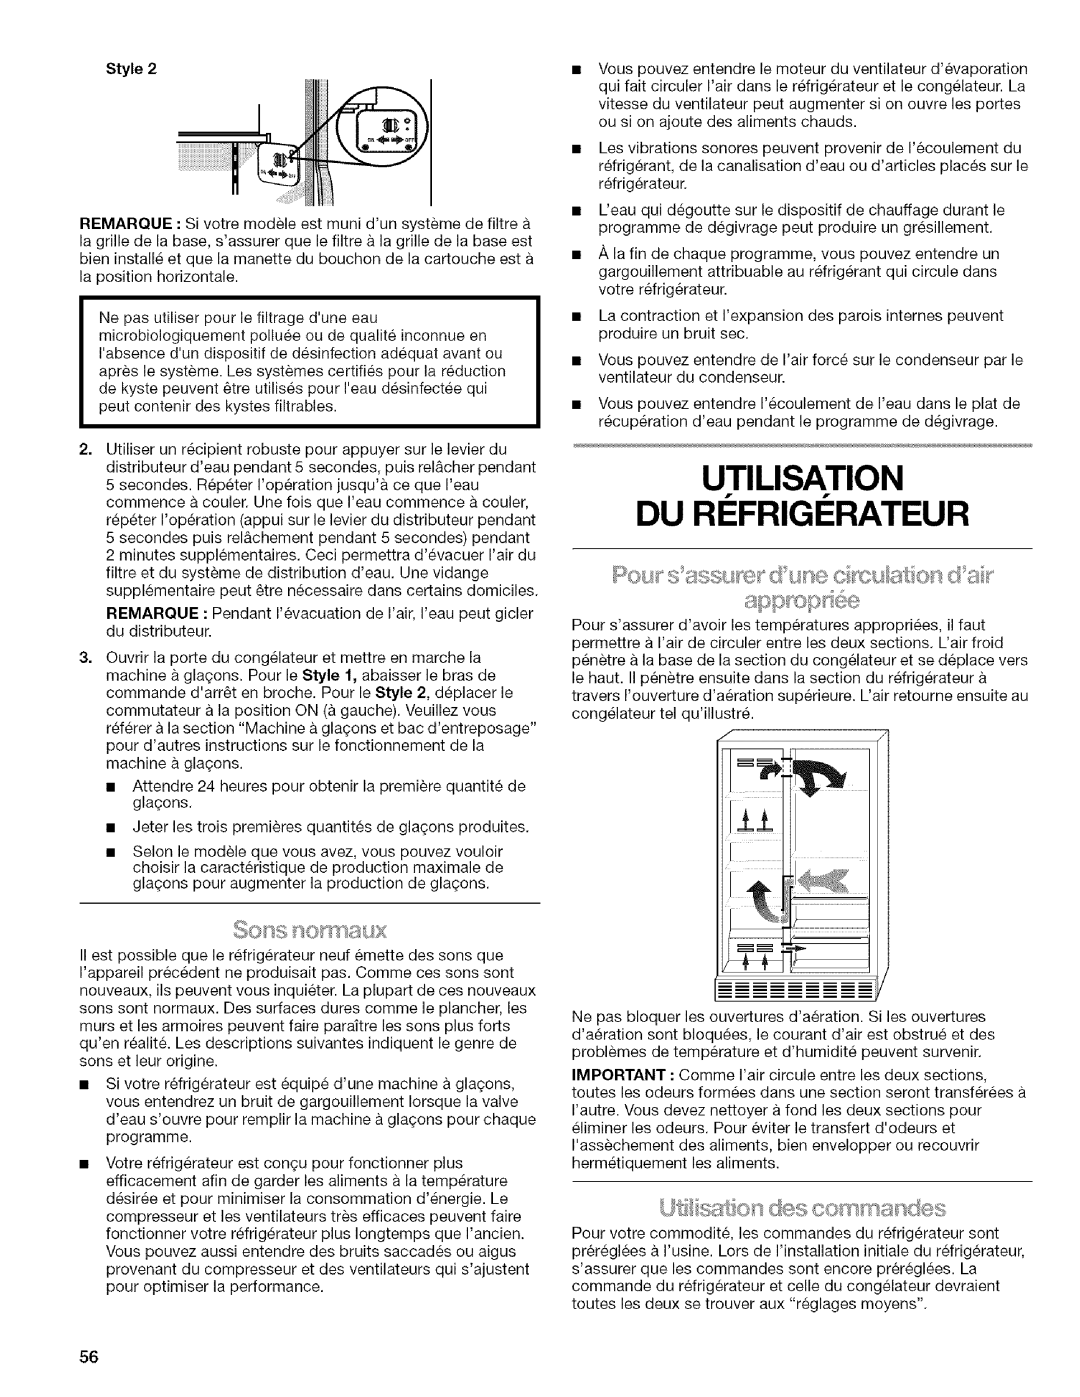 Kenmore WIOI67097A manual Utilisation Du Ri Frigi Rateur, Style 